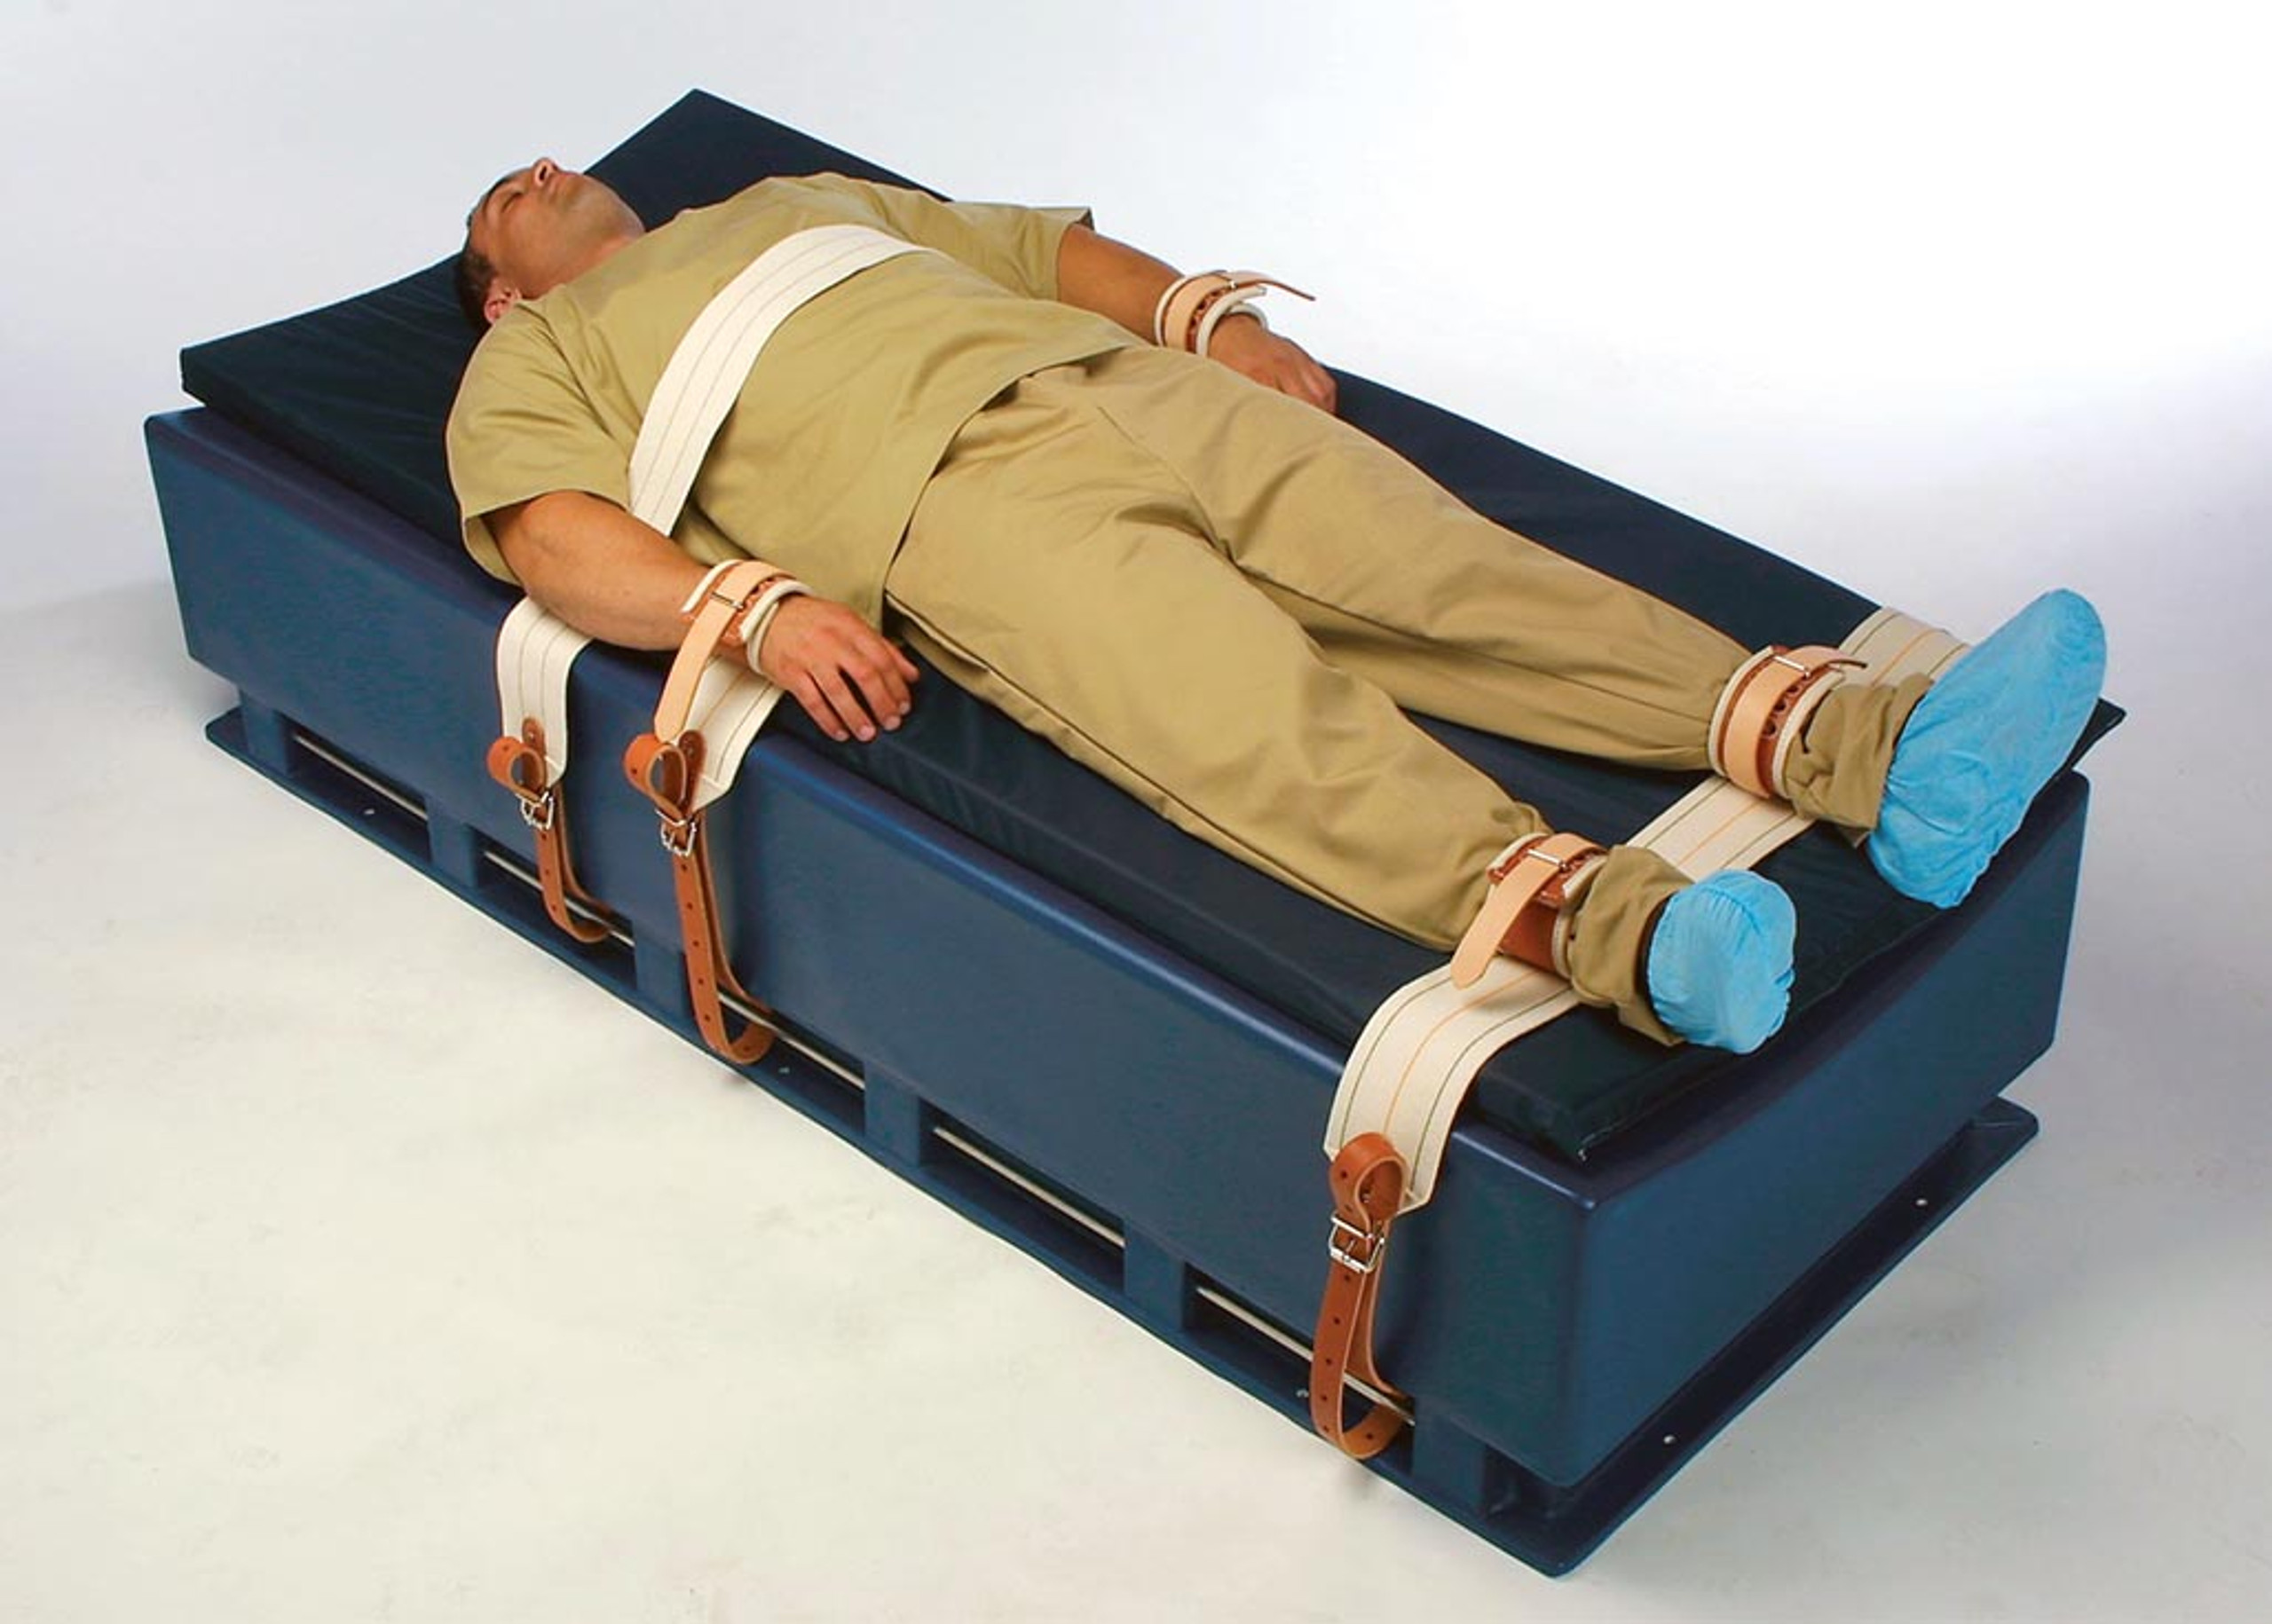 under mattress restraints for sale